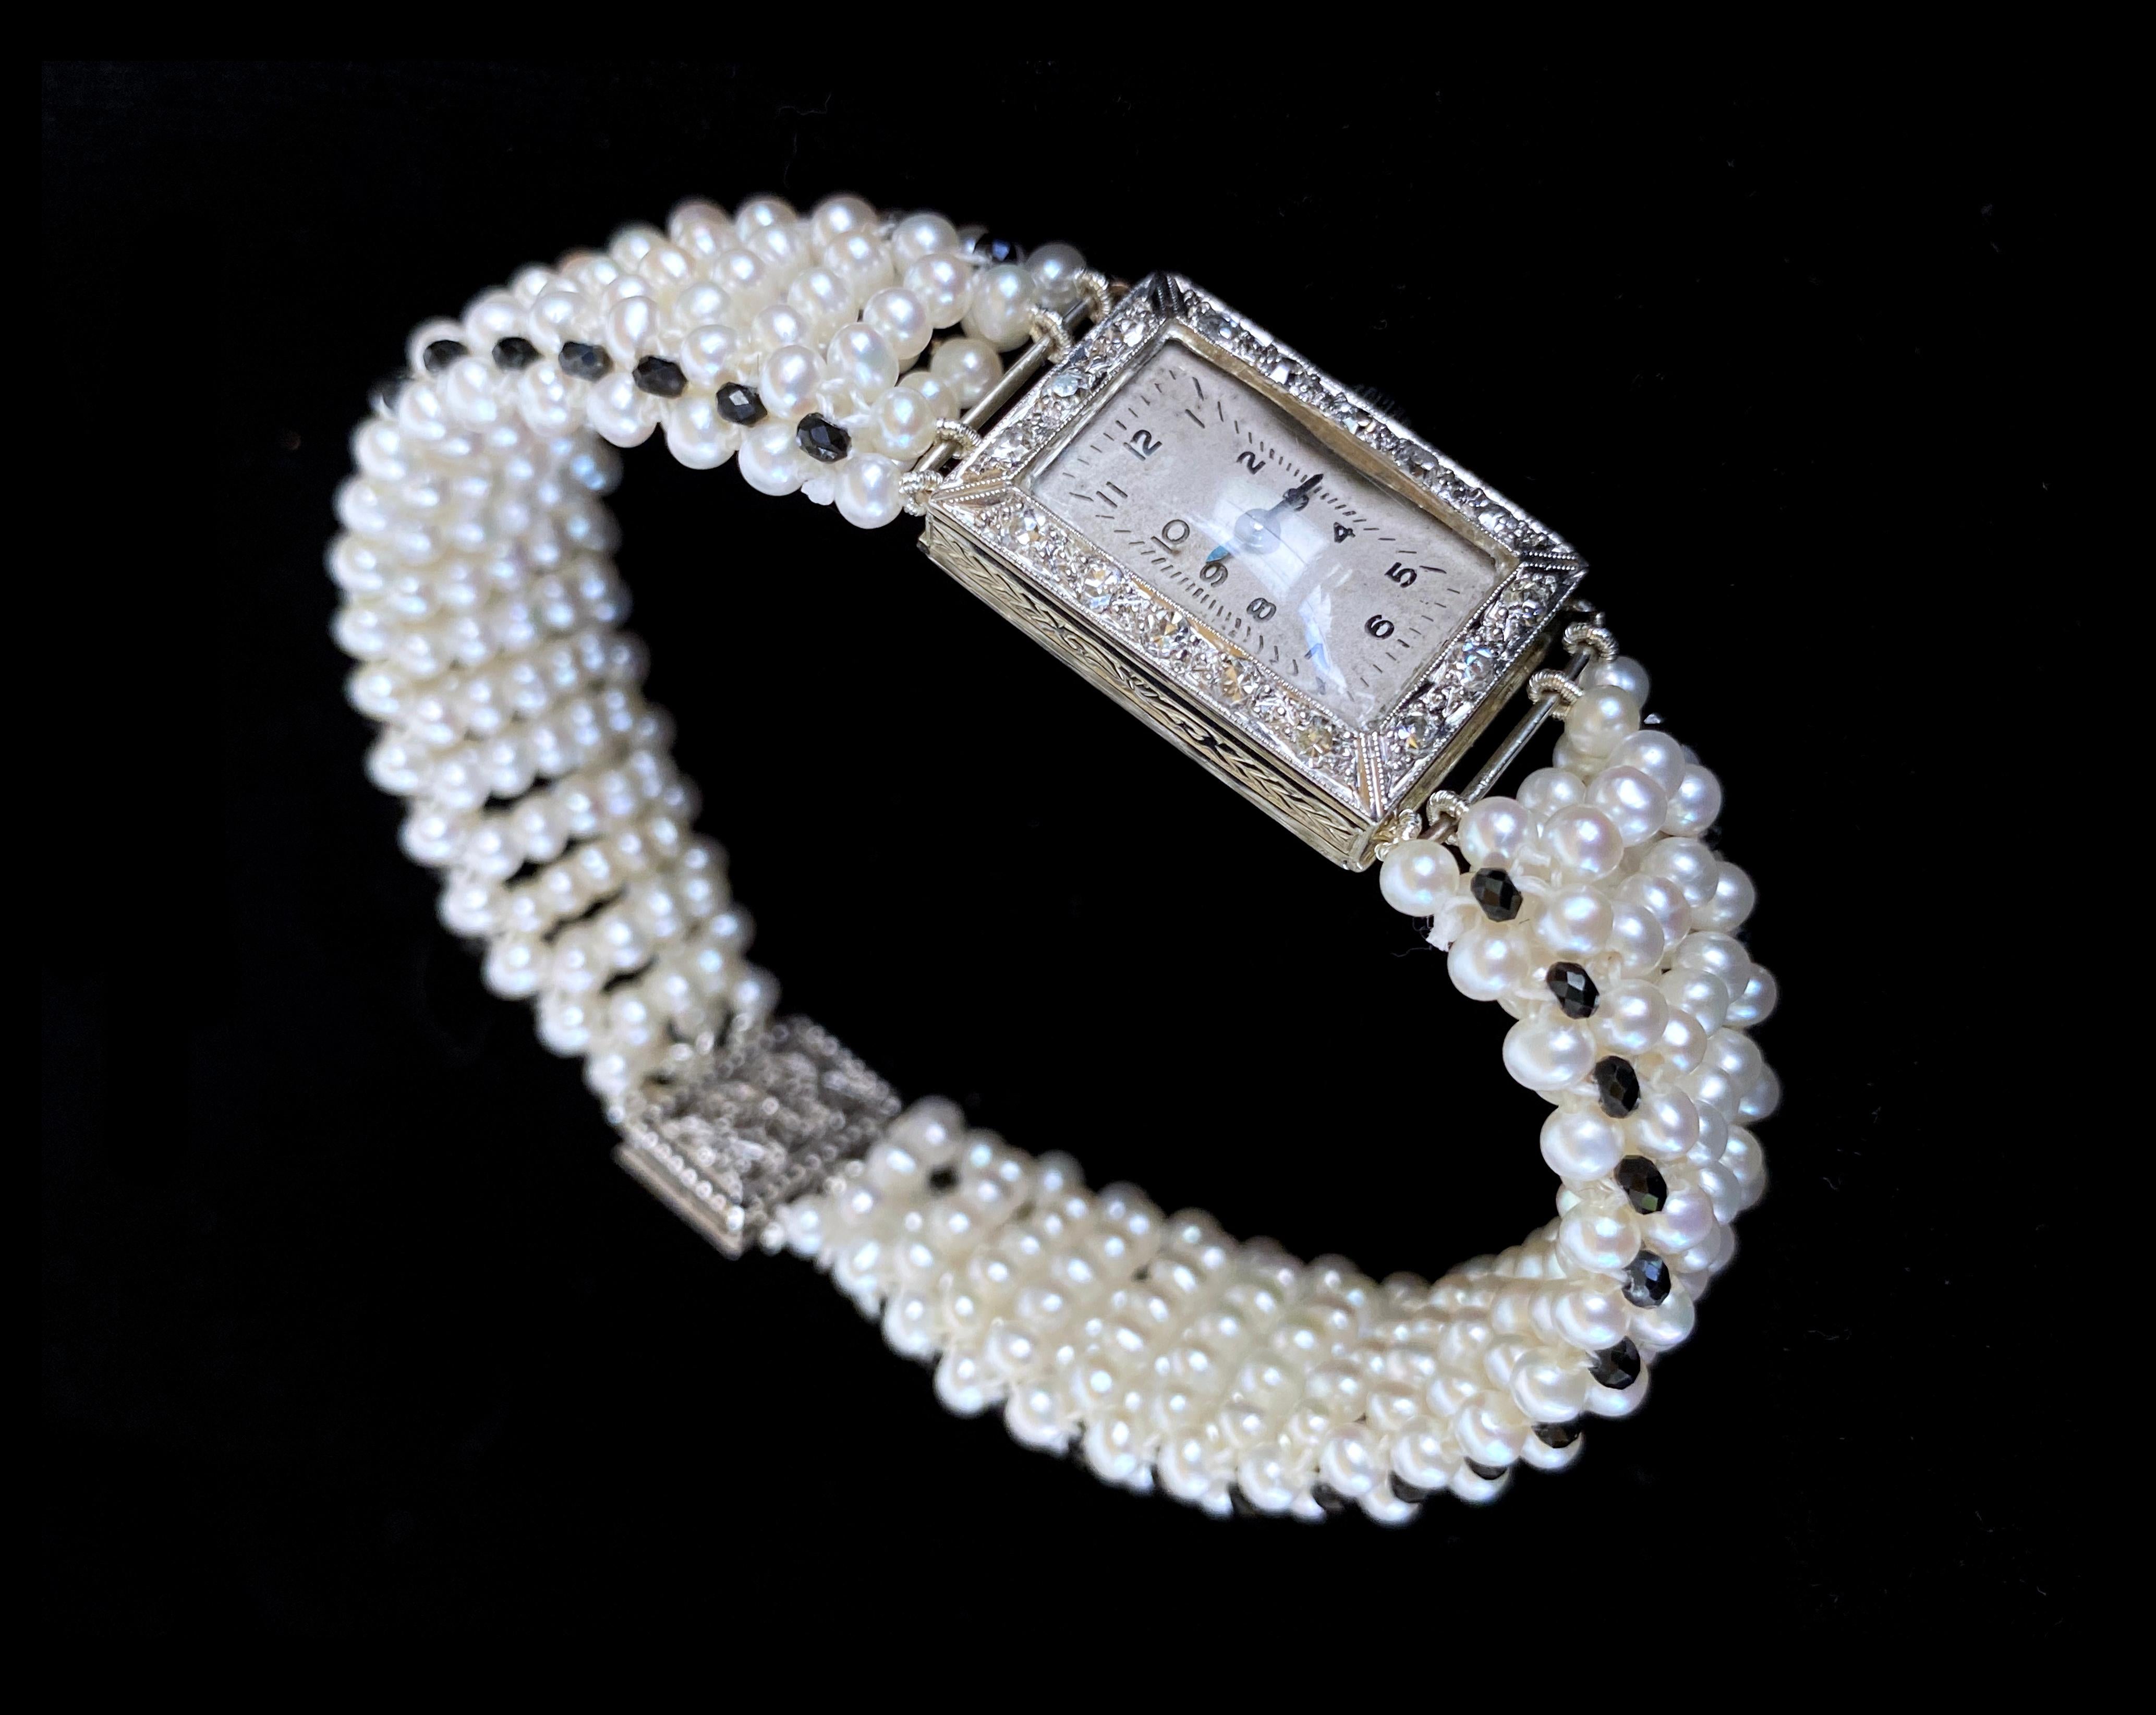 Einzigartiges Stück von Marina J. Dieses einzigartige Armband besteht aus einer alten, mit Diamanten besetzten Armbanduhr aus 18 Karat Weißgold, die in ein wunderschönes, flaches Perlenband umgewandelt wurde. Dieses Stück besteht aus wunderschönen,